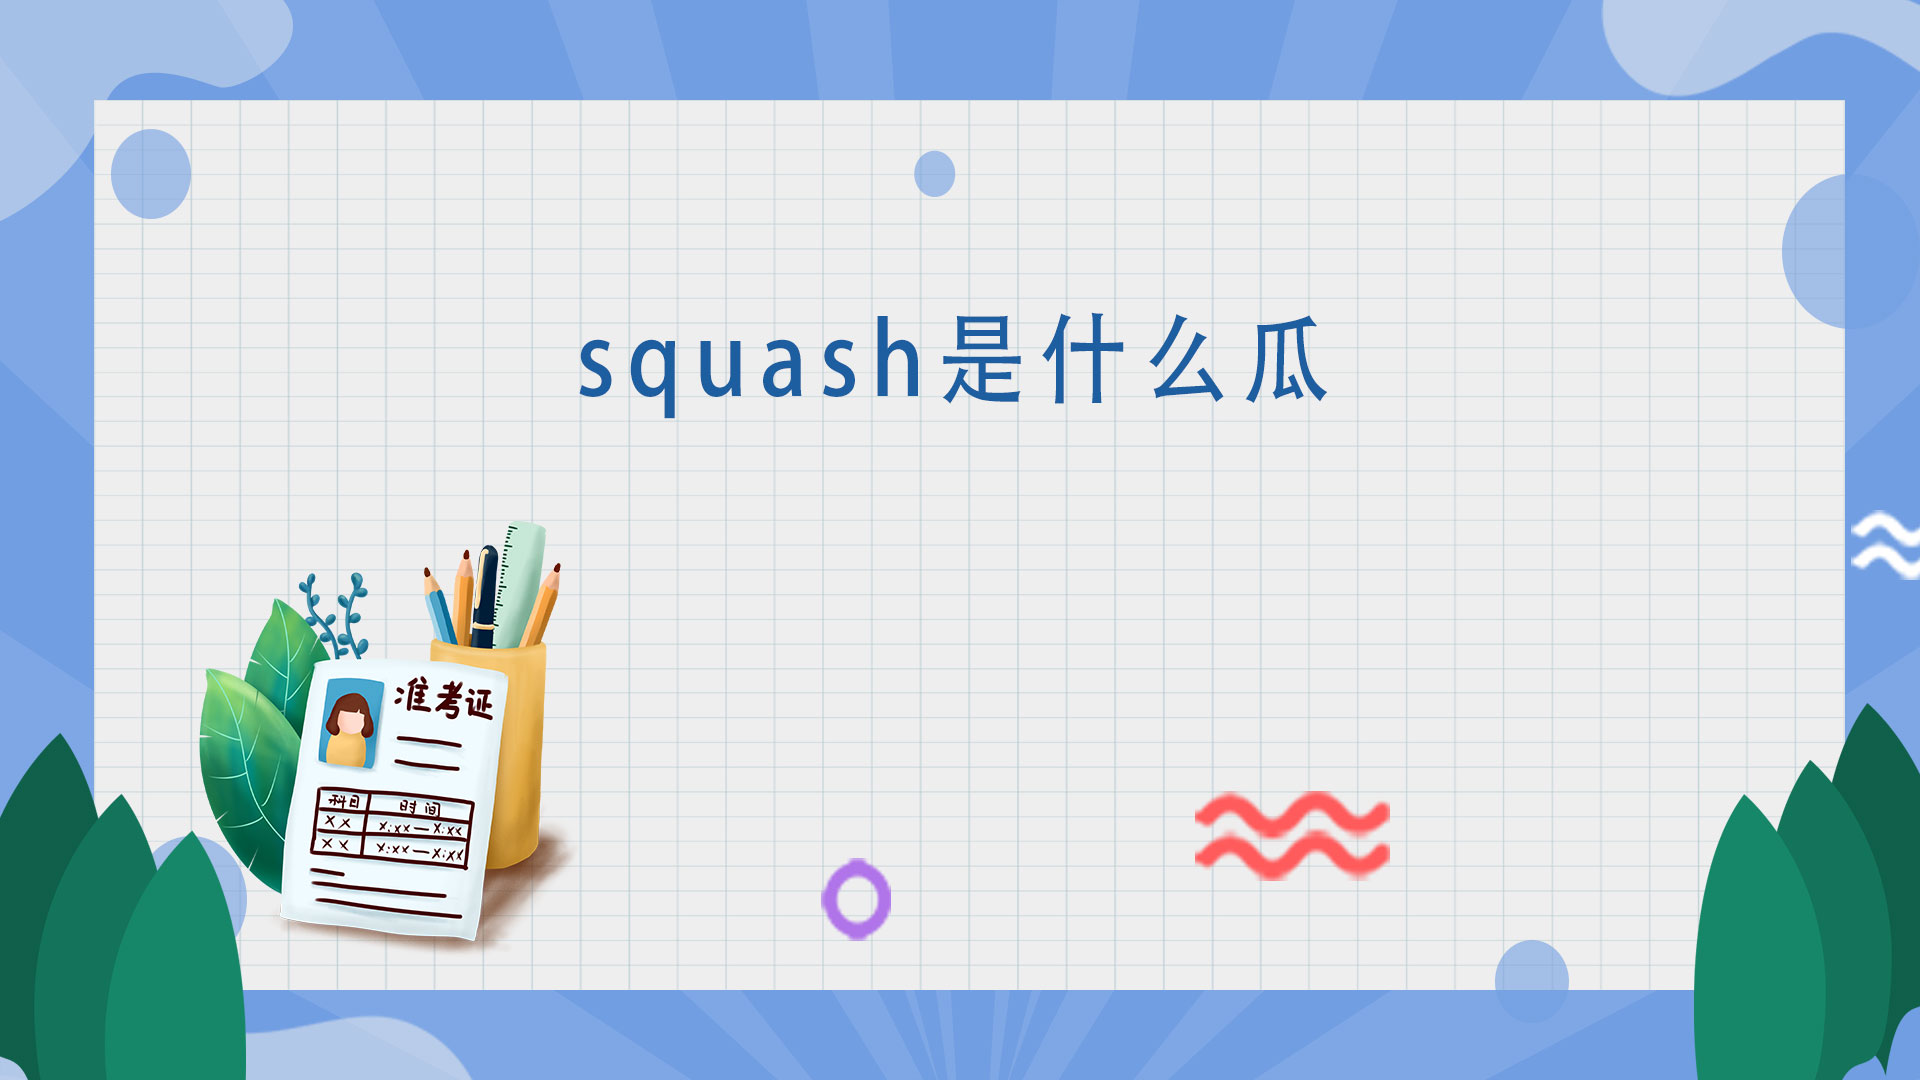 squash是什么瓜